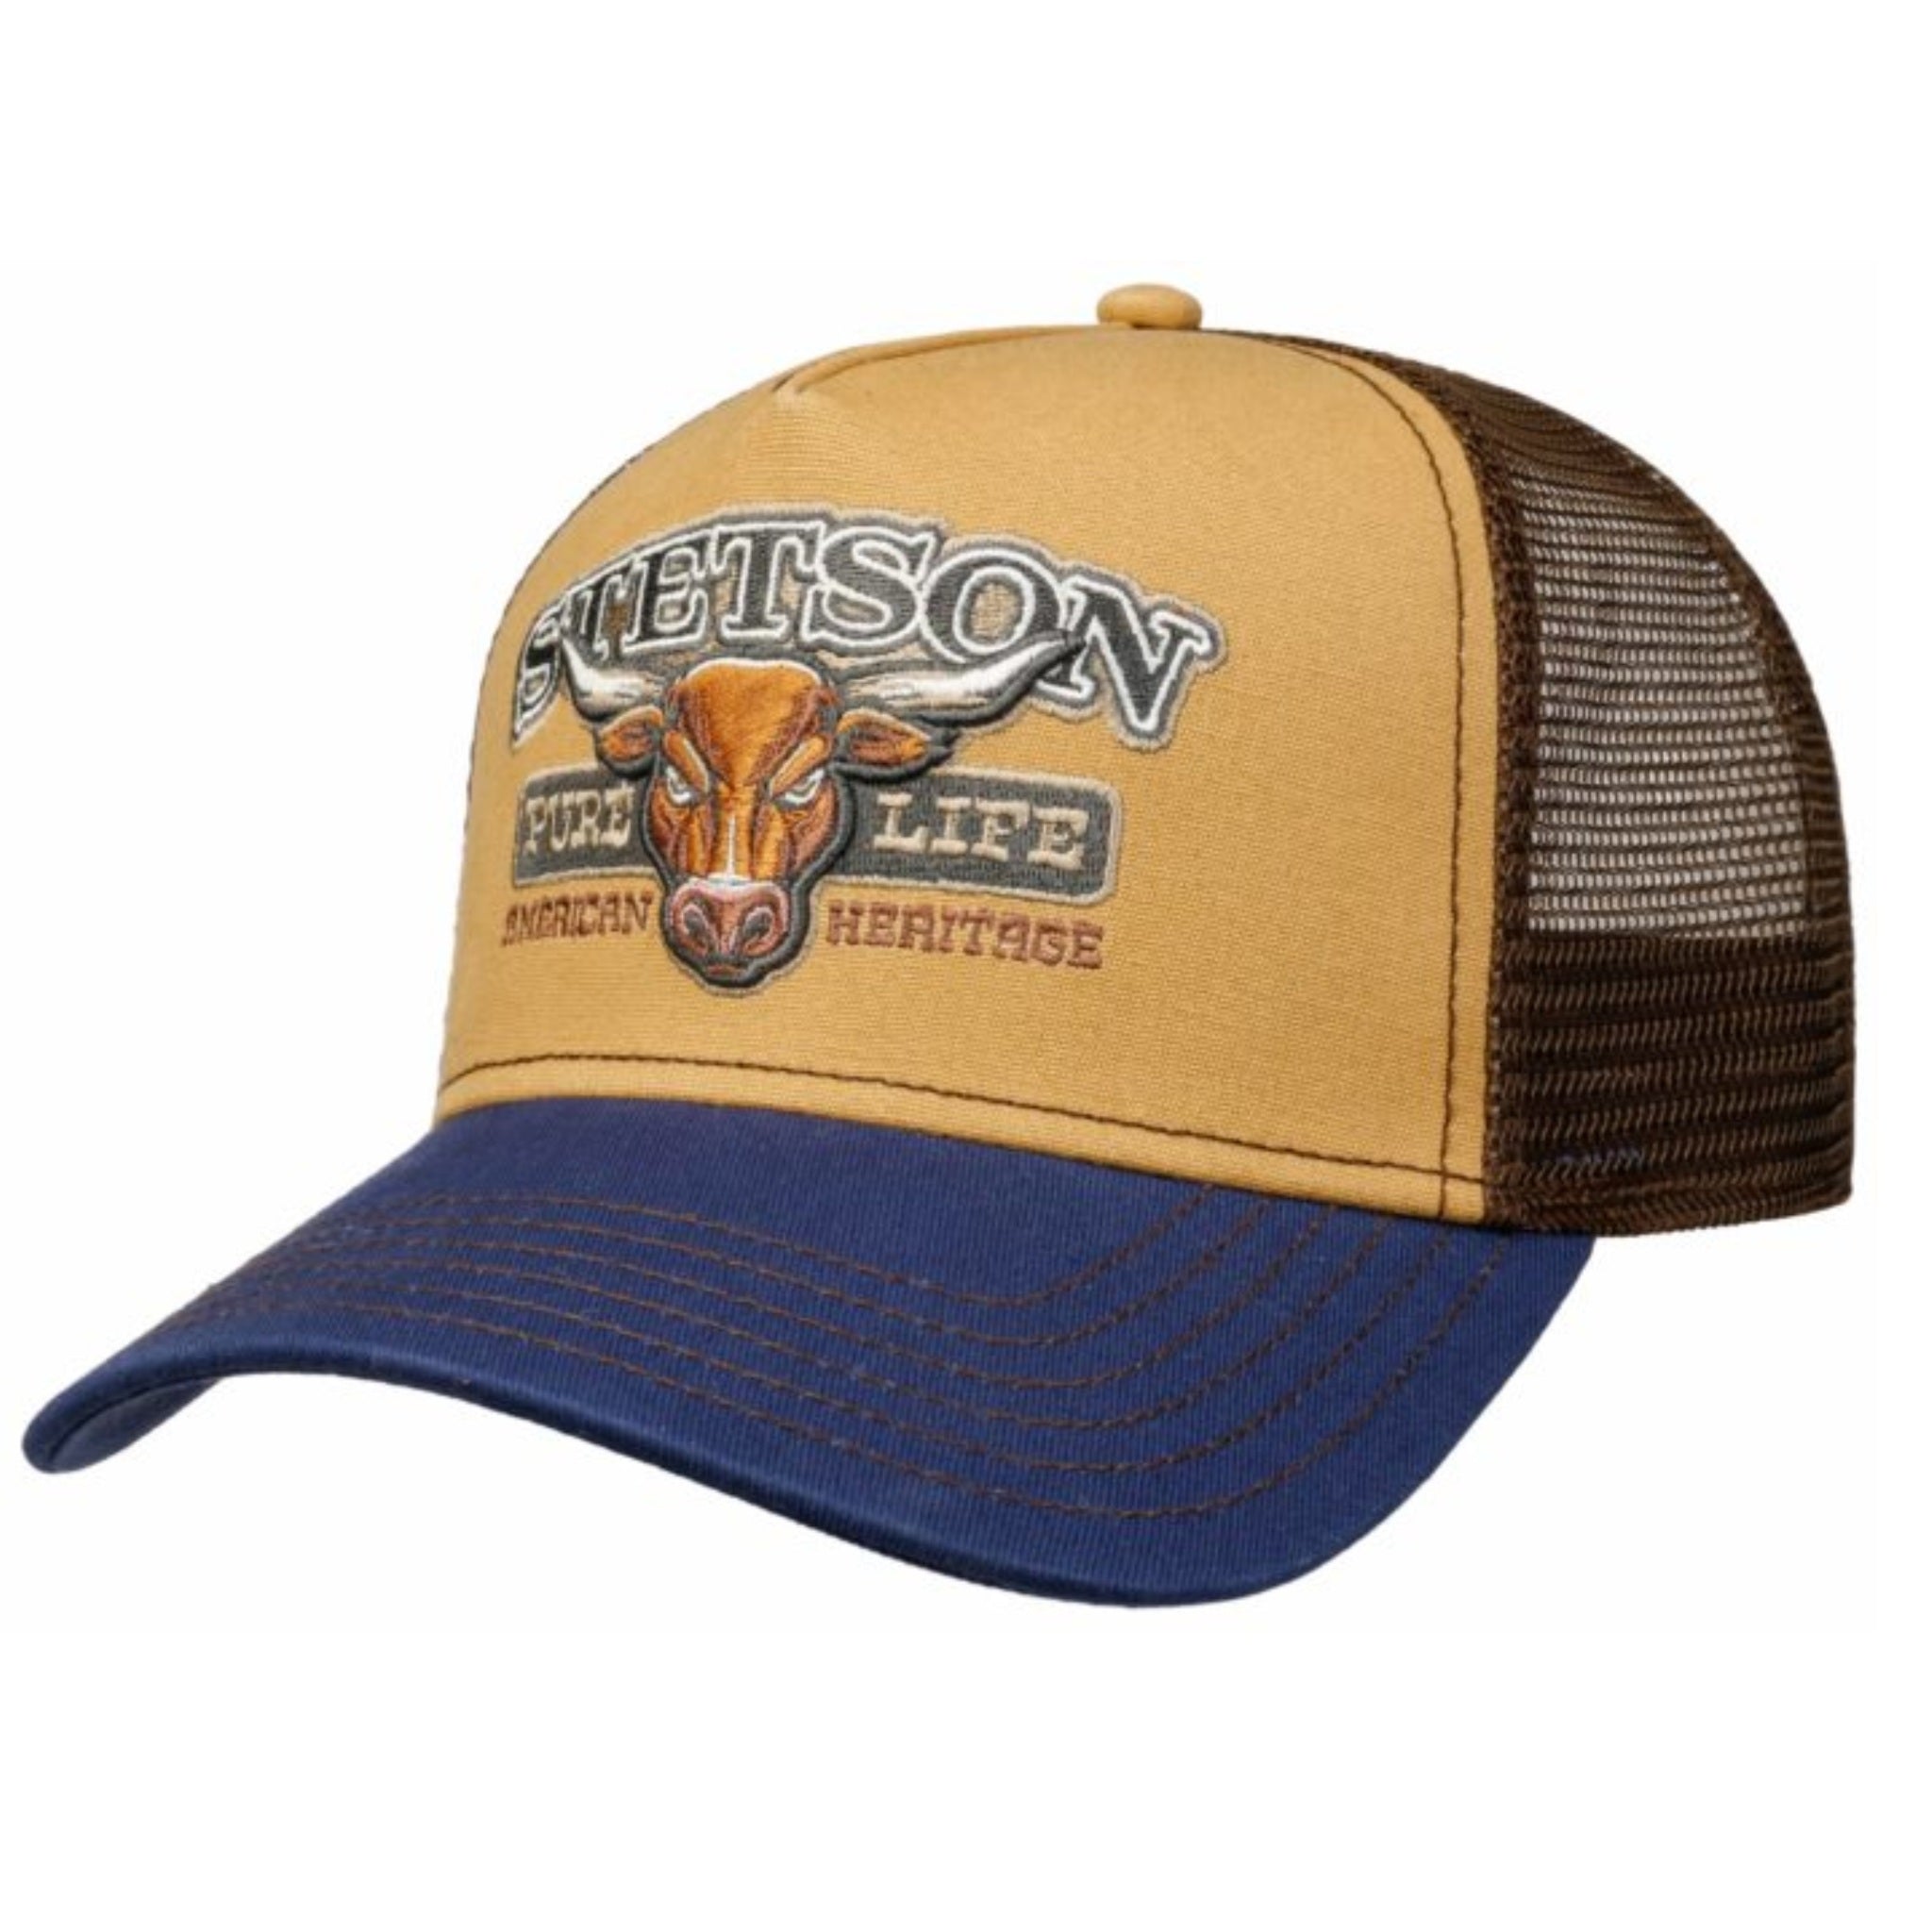 The Hat Shop Stetson Trucker Cap Bull